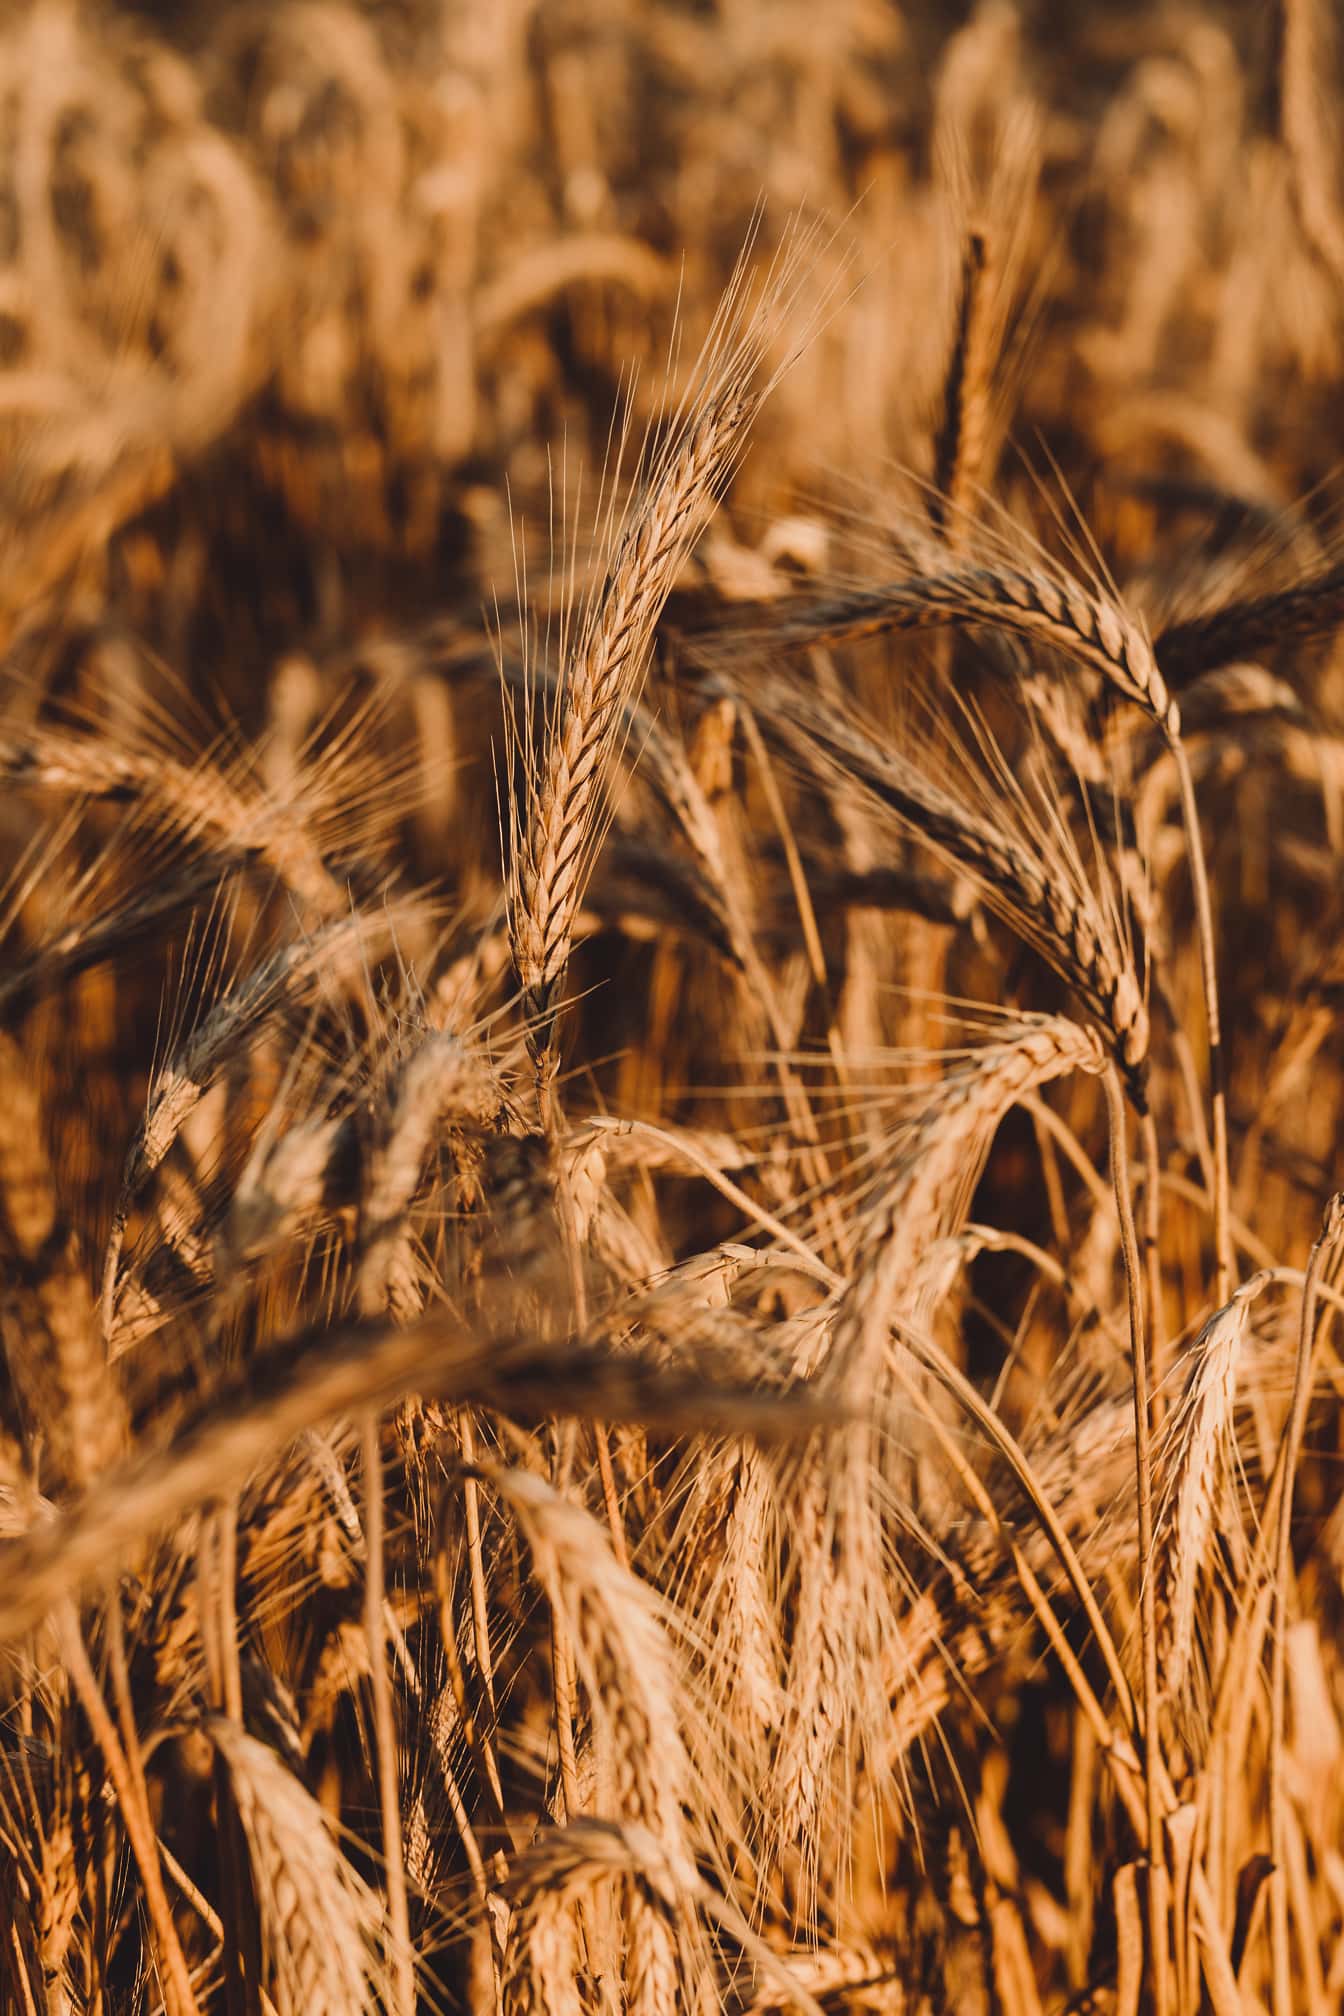 Primer plano del tallo con semillas de trigo seco en el campo de trigo